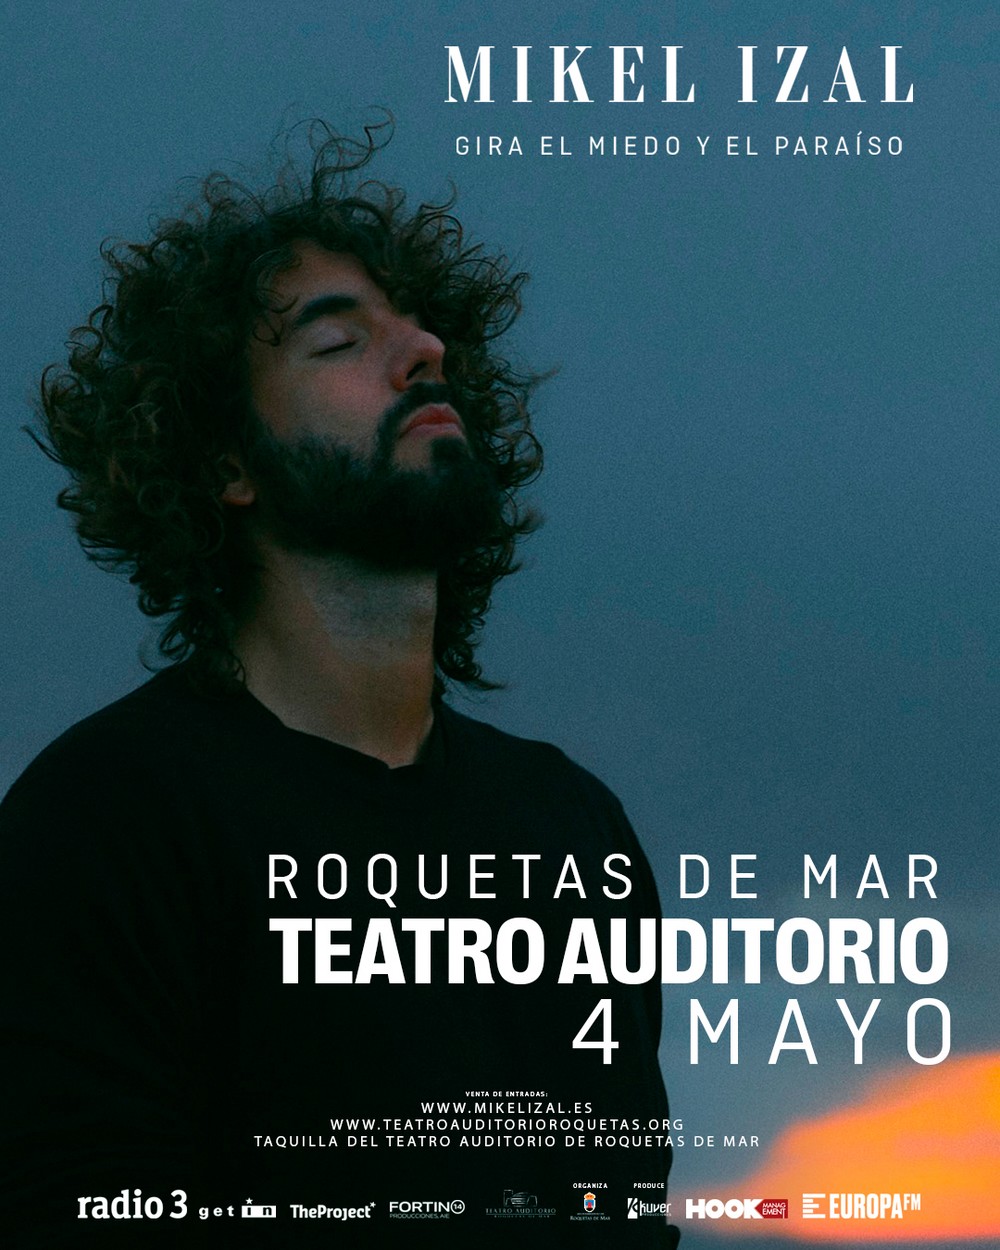 Mikel Izal actuará en el Teatro Auditorio de Roquetas de Mar en su gira de presentación ‘El miedo y el paraíso’